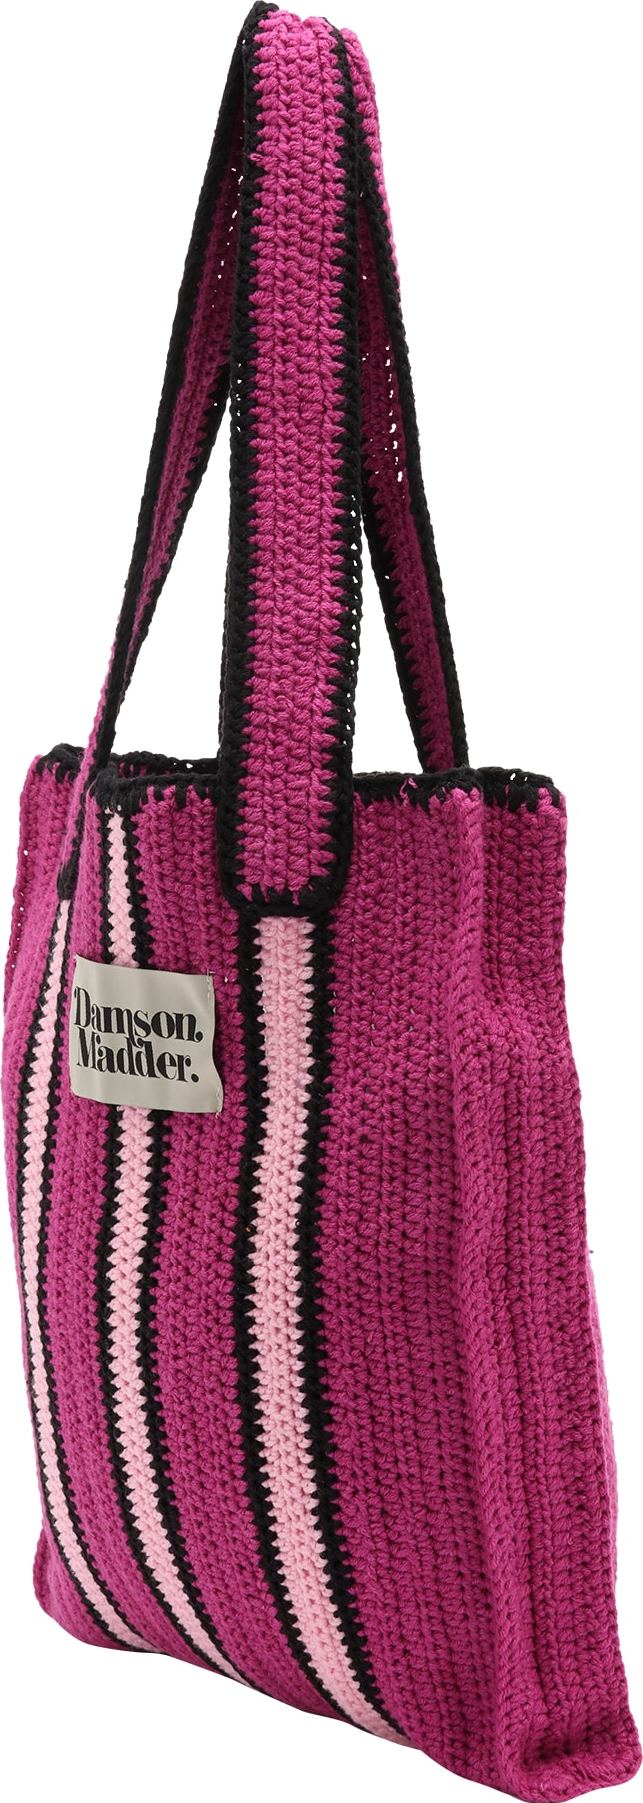 Damson Madder Nákupní taška světle růžová / červenofialová / černá